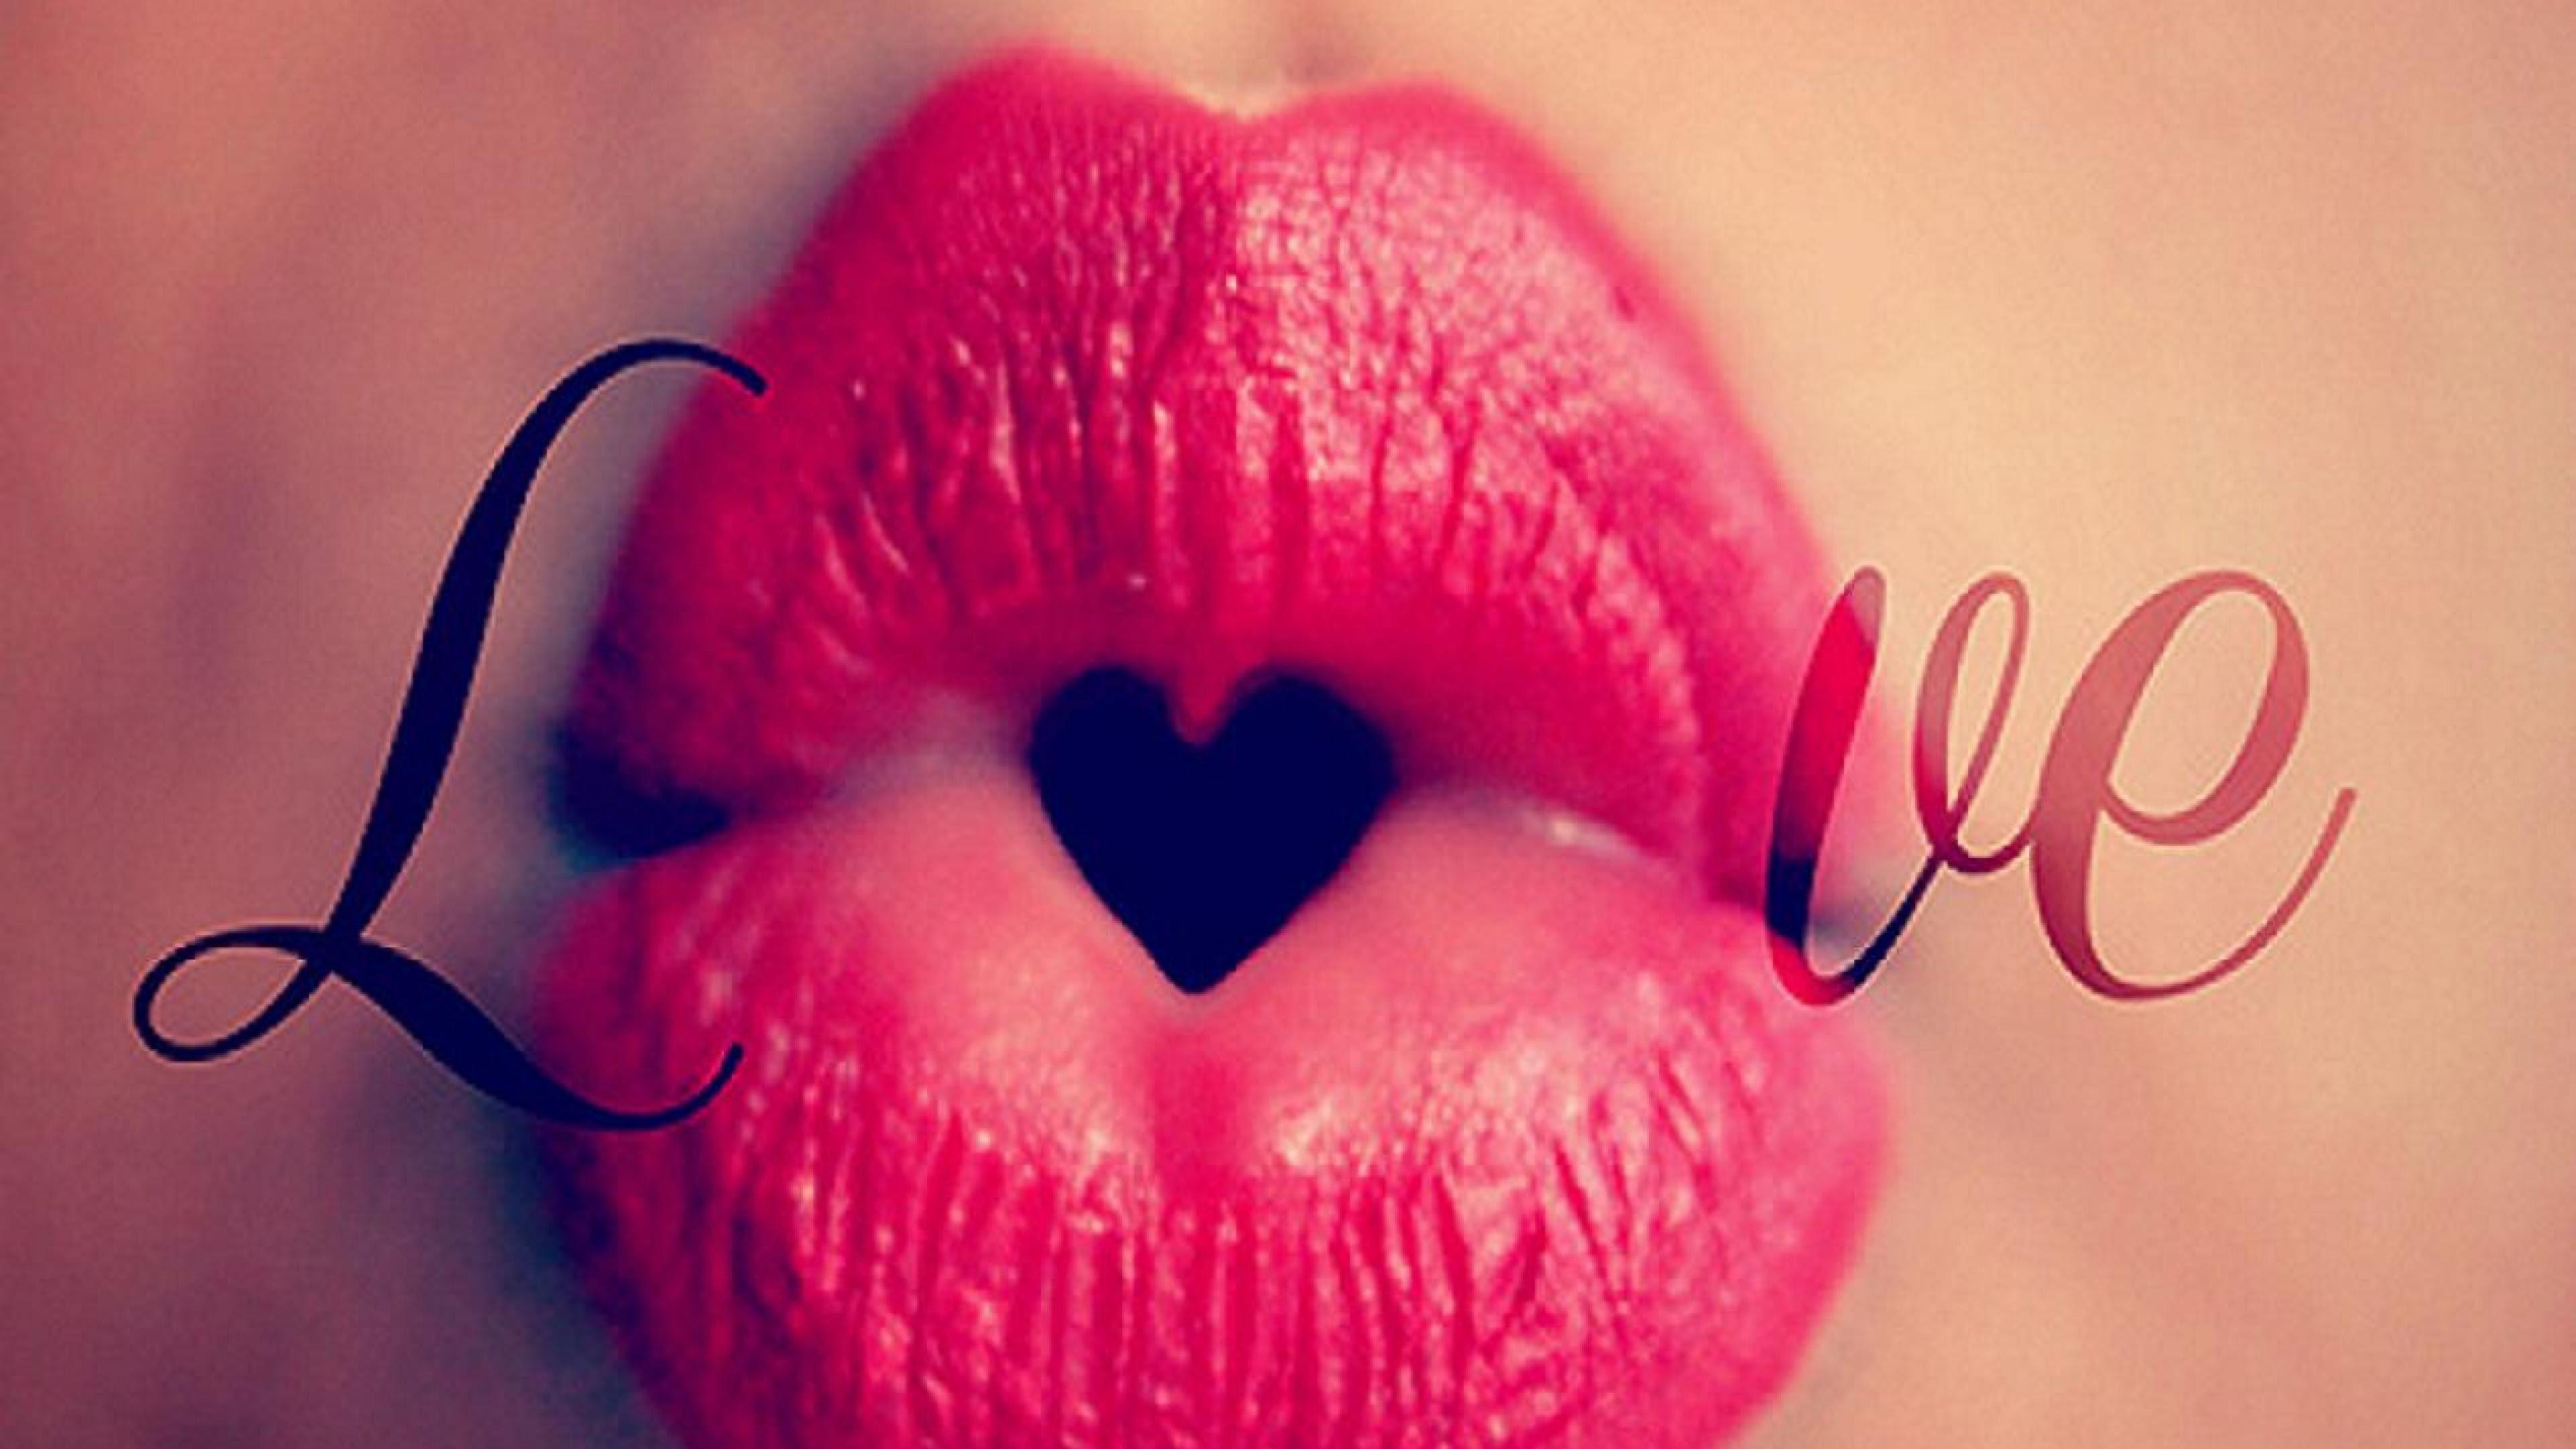 Lip Kiss HD Wallpaper